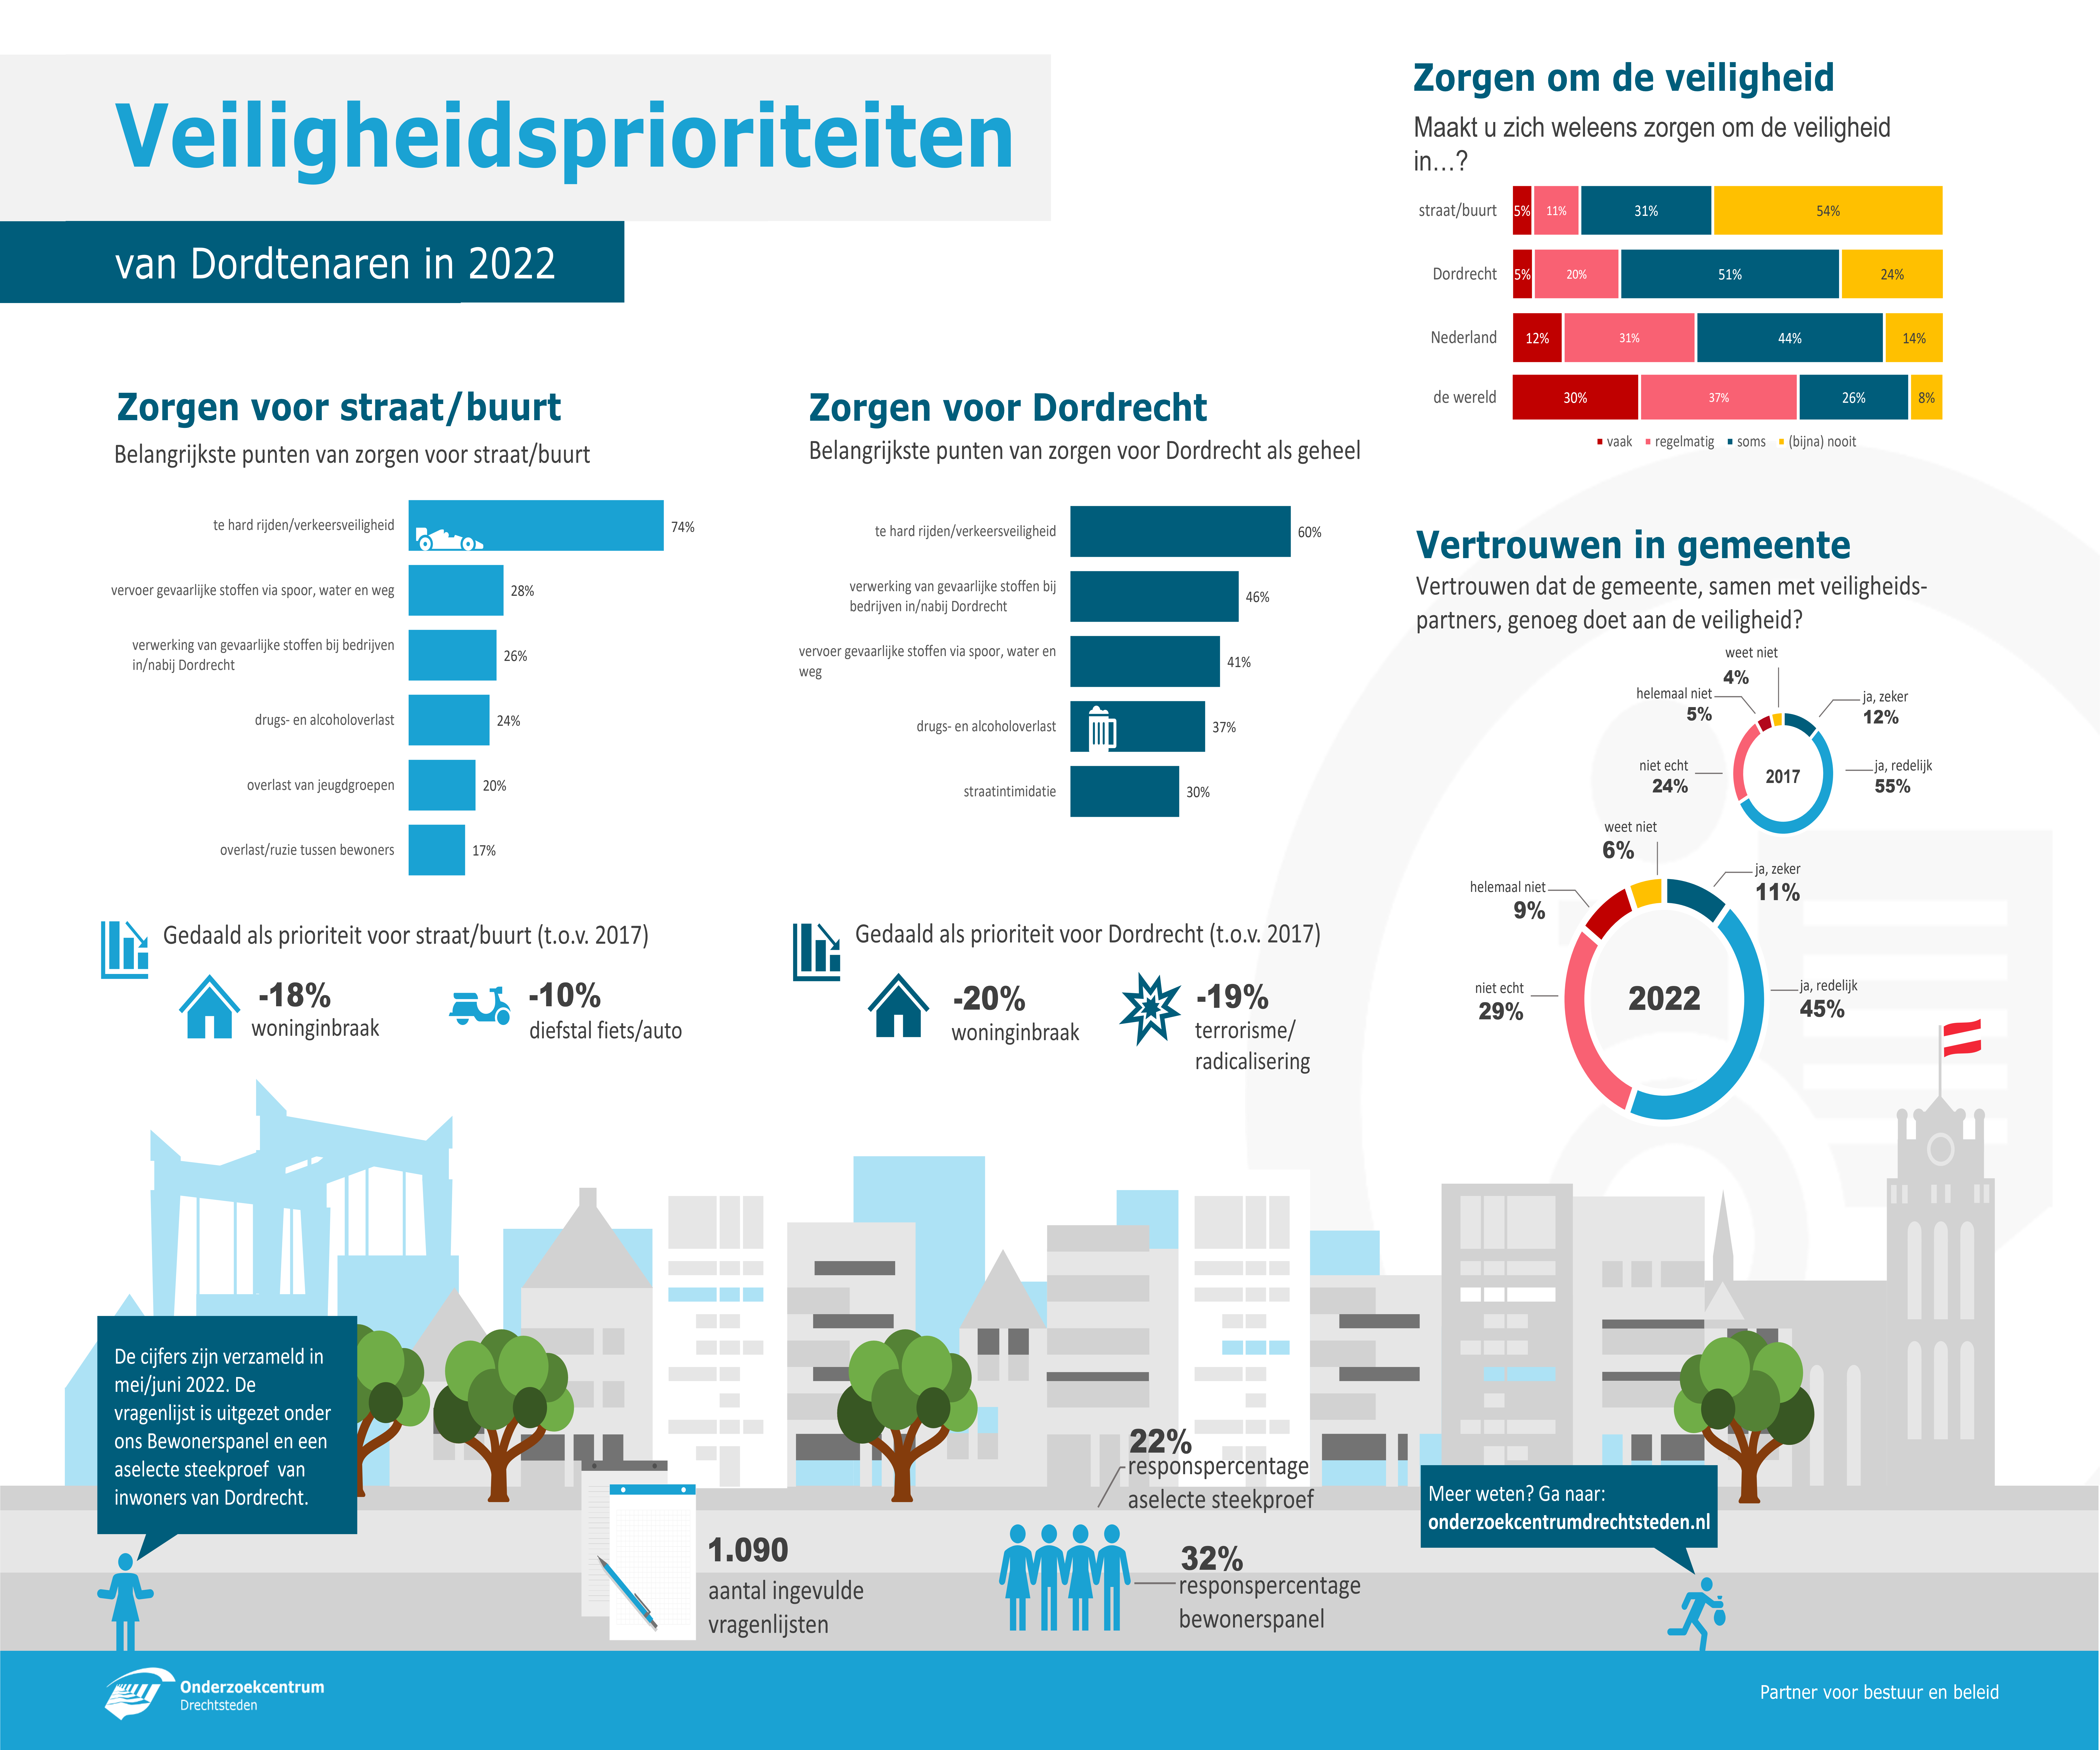 202209 - infographic Veiligheidsprioriteiten Dordrecht 2022 - def